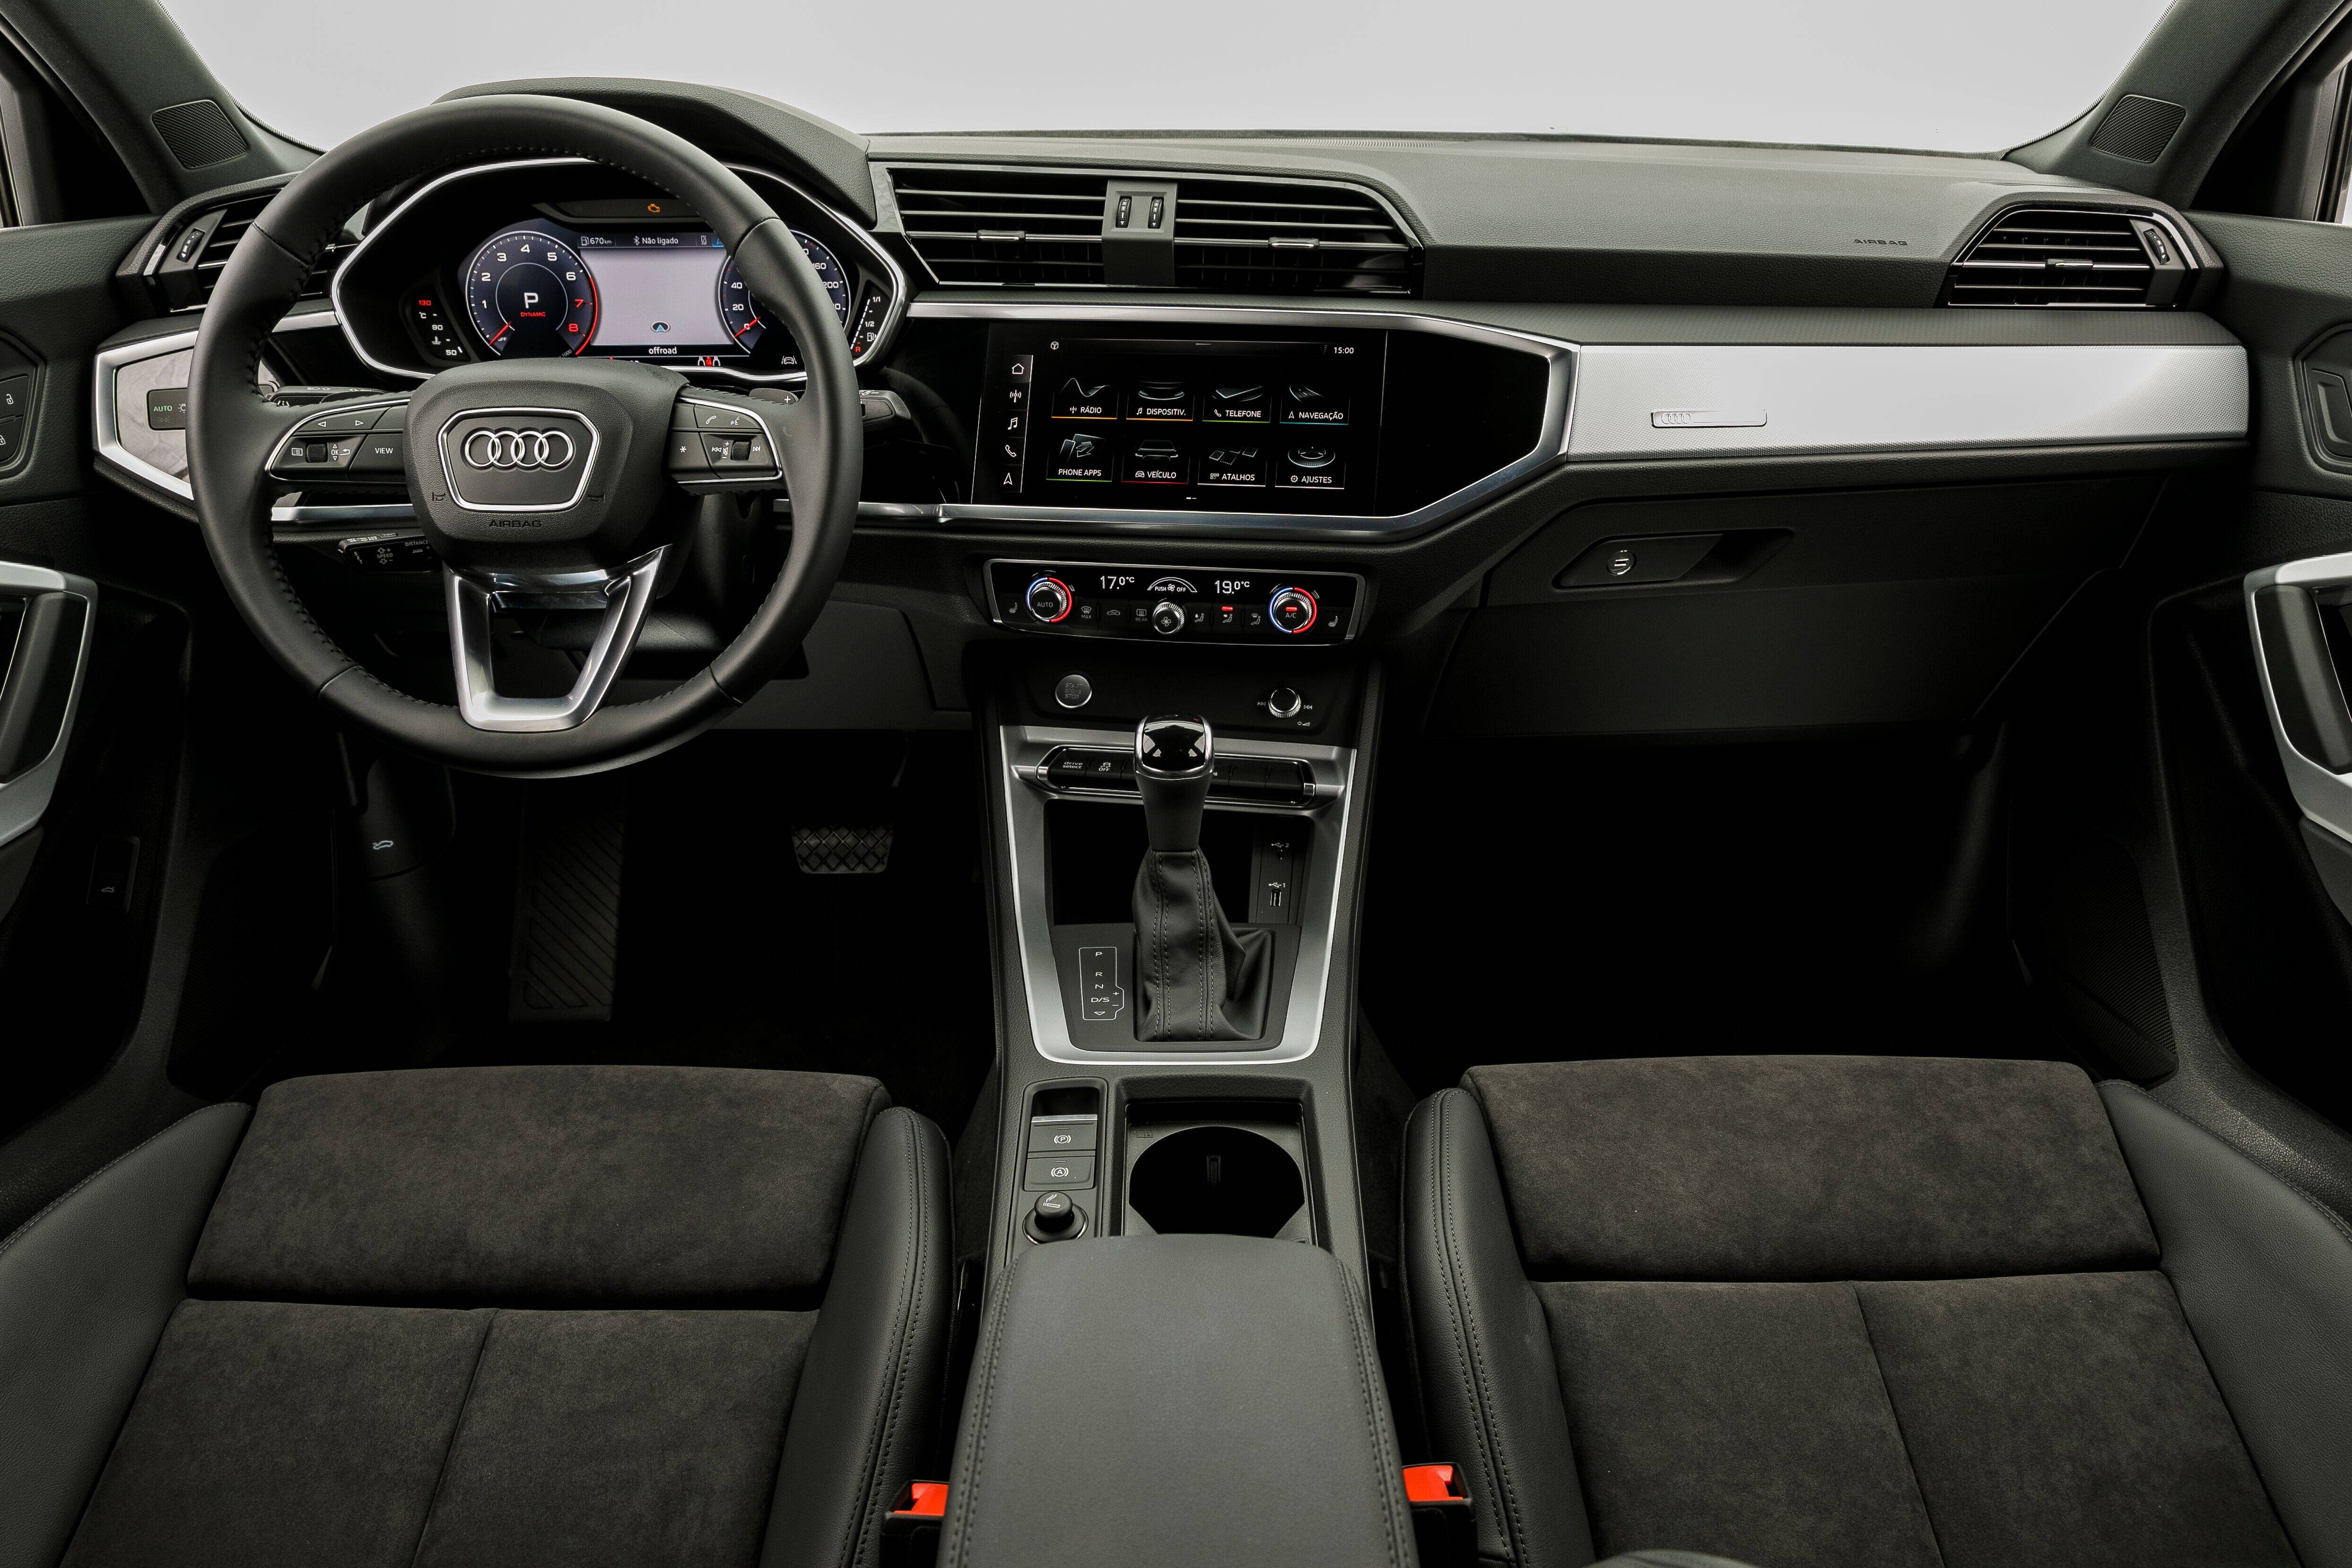 Audi Q3 2020. Foto: Divulgação